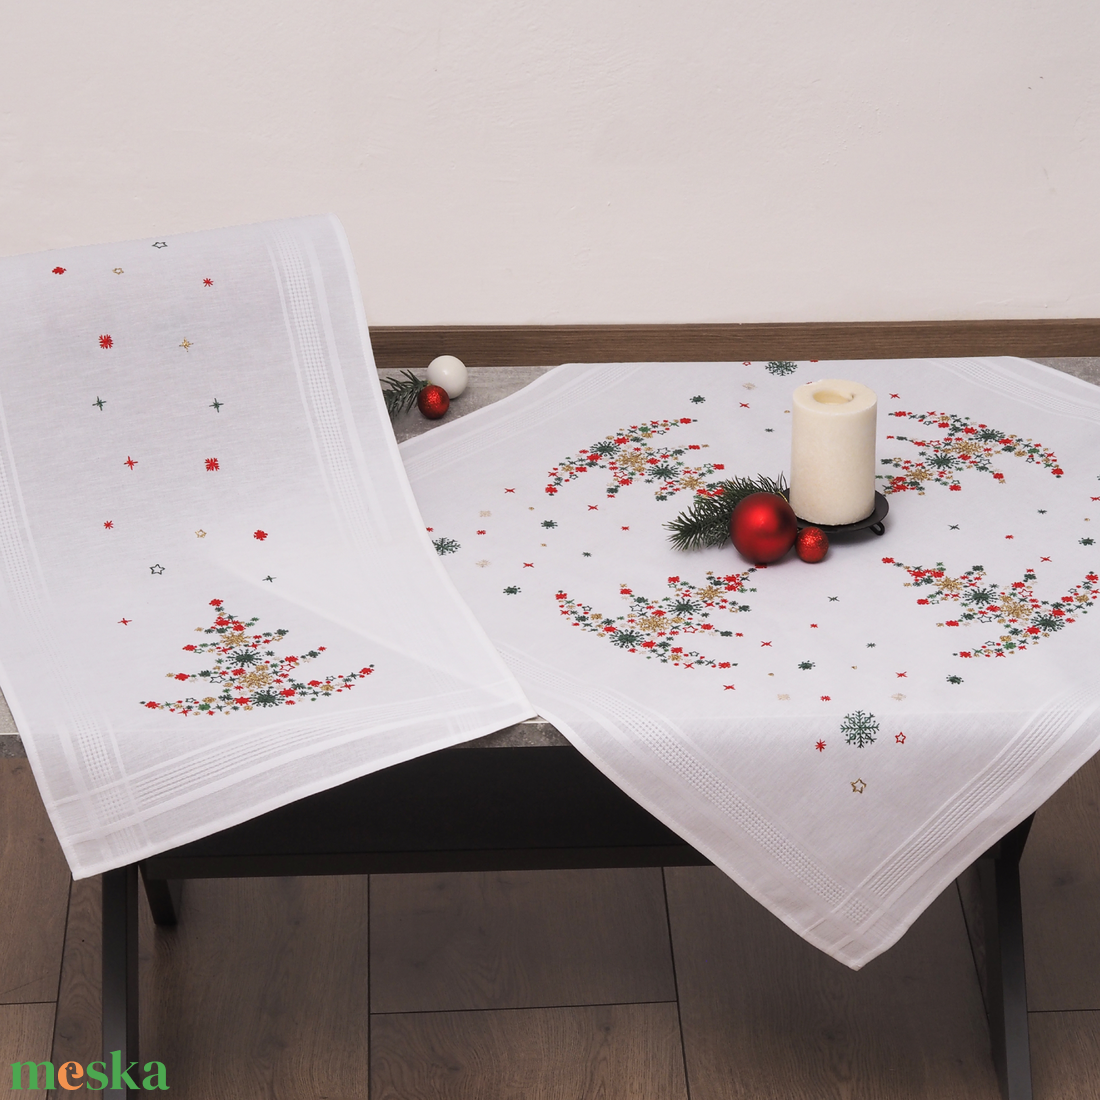 Tarka karácsonyfa mintás terítő hímzőkészlet, hímzés,  80 x 80 cm - diy (csináld magad) - egységcsomag - Meska.hu